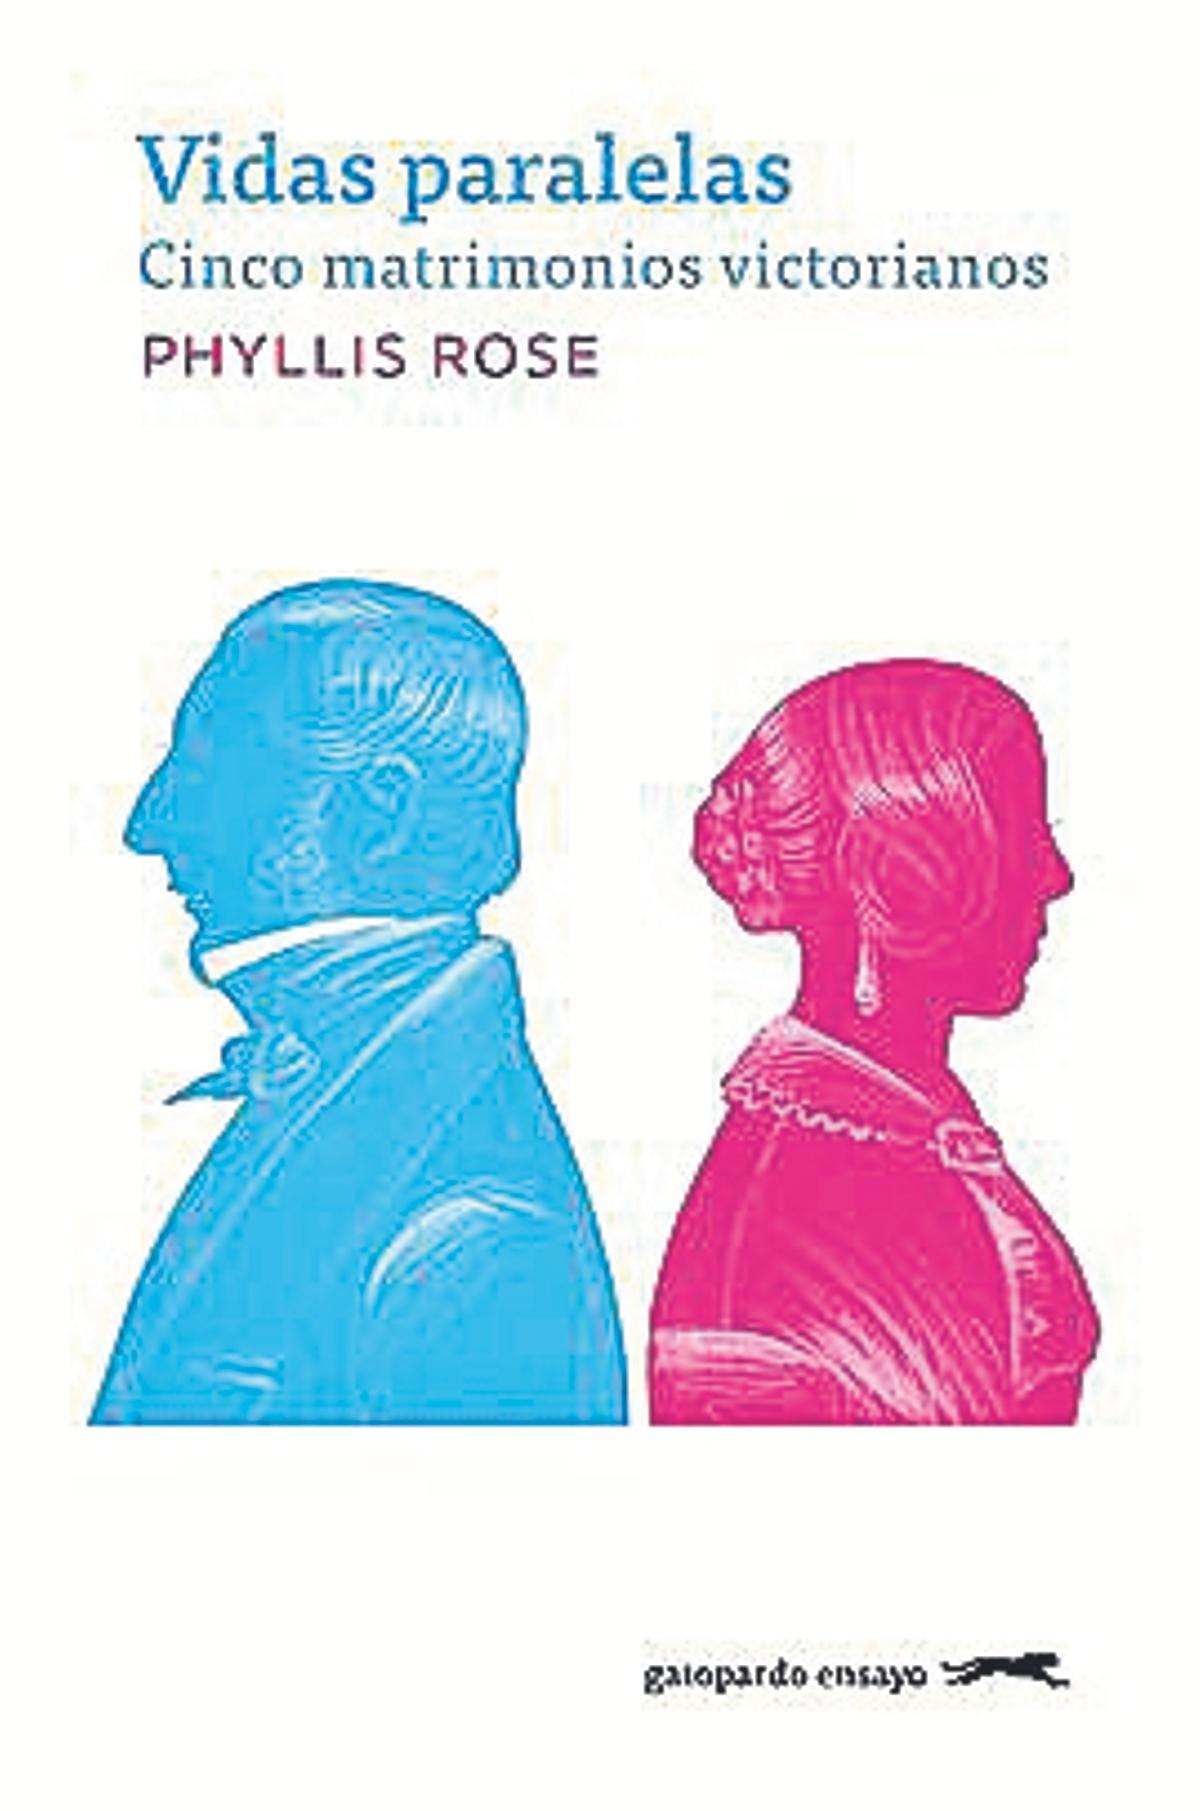 Phyllis Rose Vidas paralelas (Cinco  matrimonios victorianos)  Traducción de María Antonia de Miquel Gatopardo  360 páginas / 22,75 euros